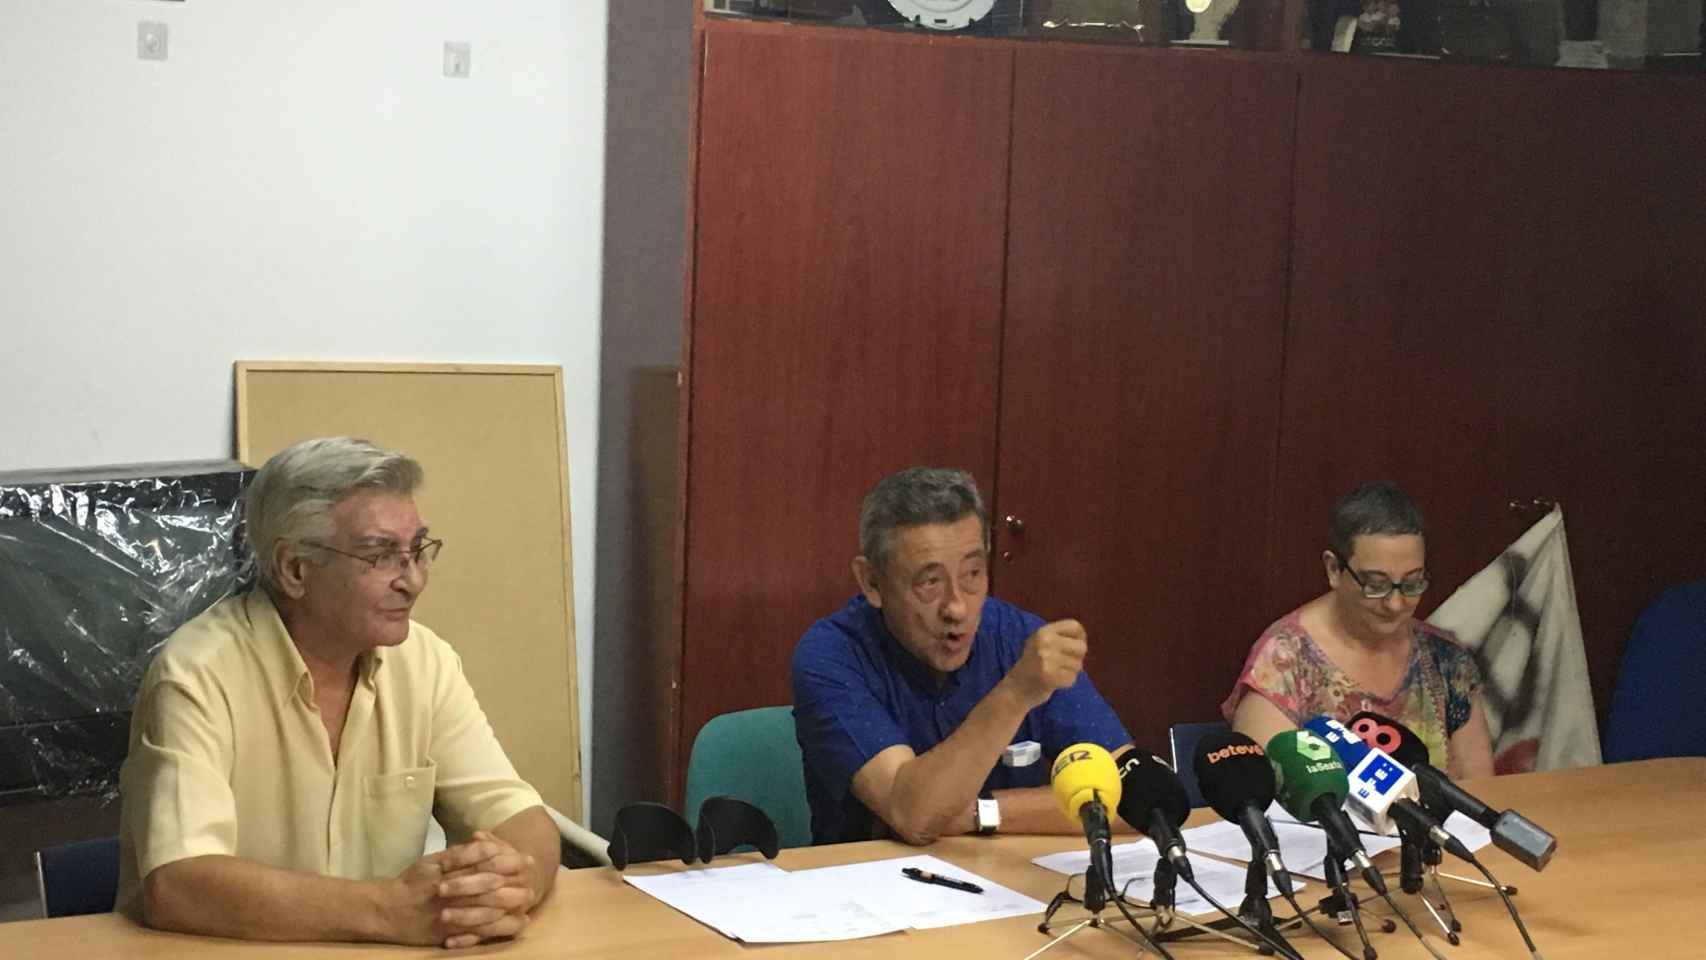 Pep Garcia, en el centro, durante una rueda de prensa sobre el Raval el pasado septiembre / M.S.